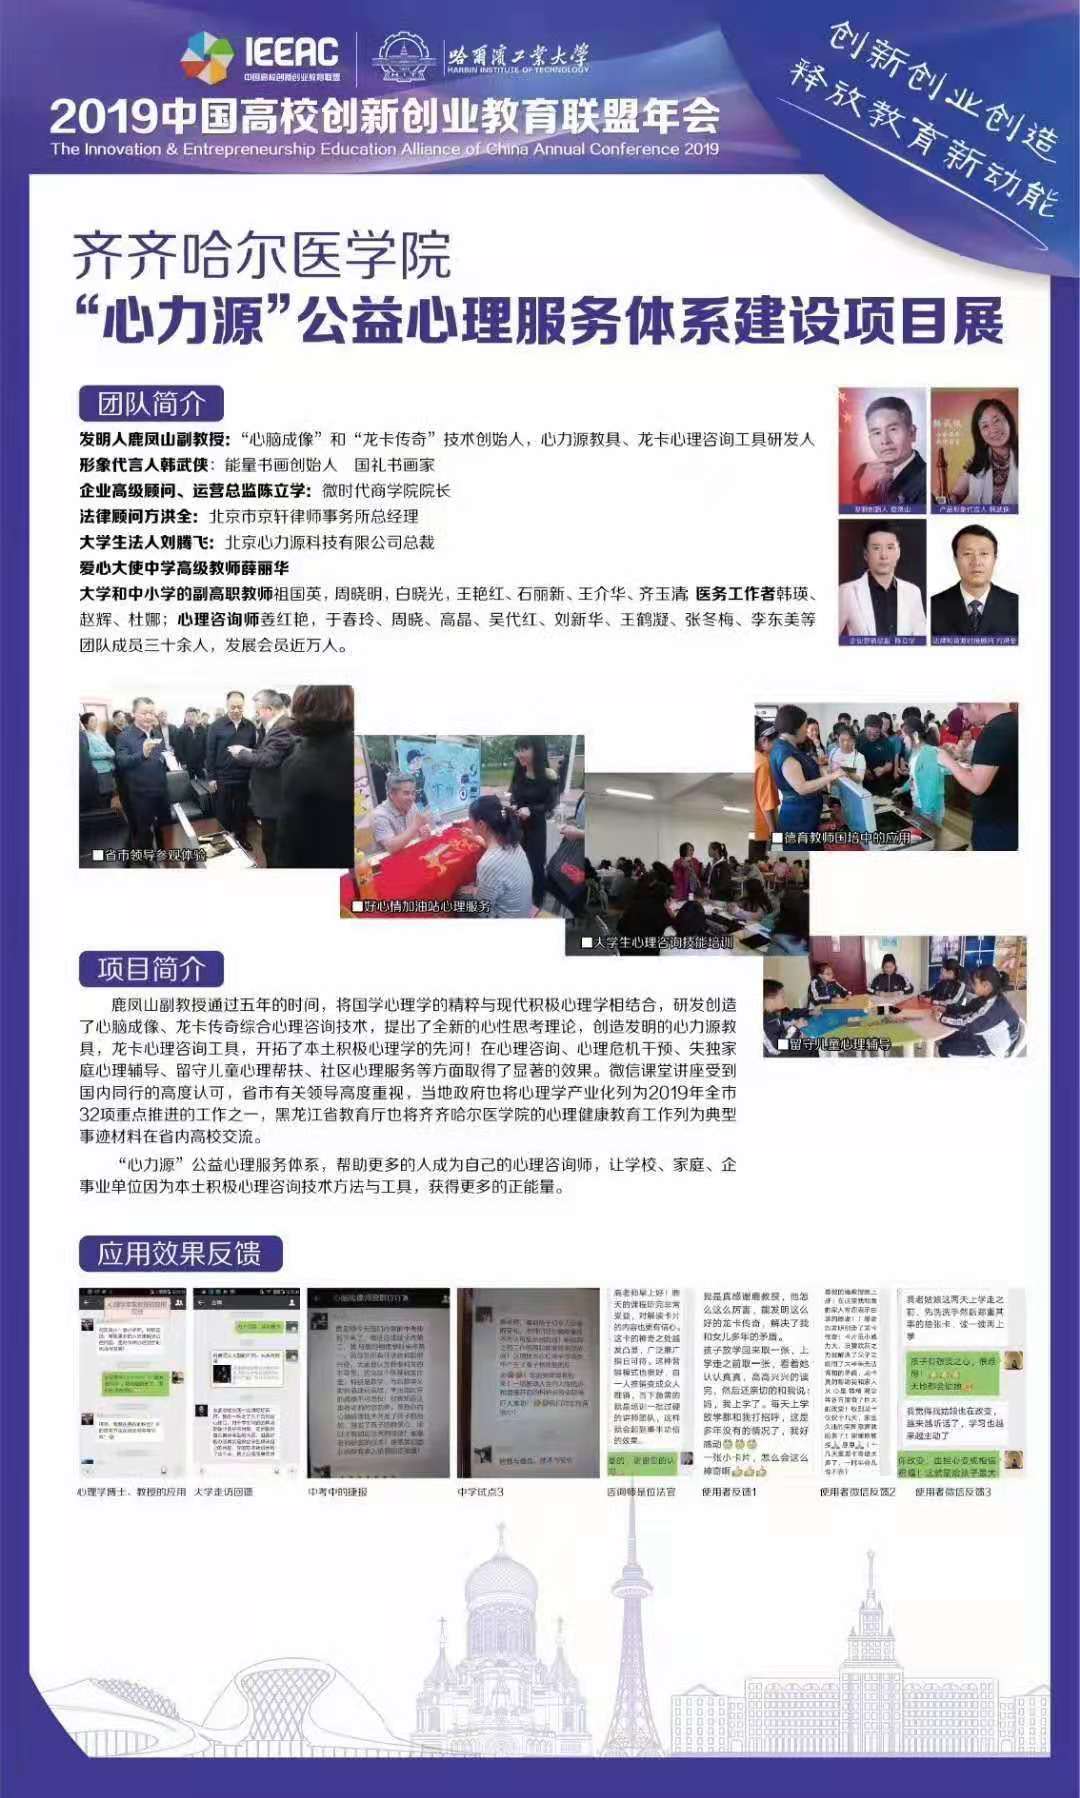 中国高校创新成果展示